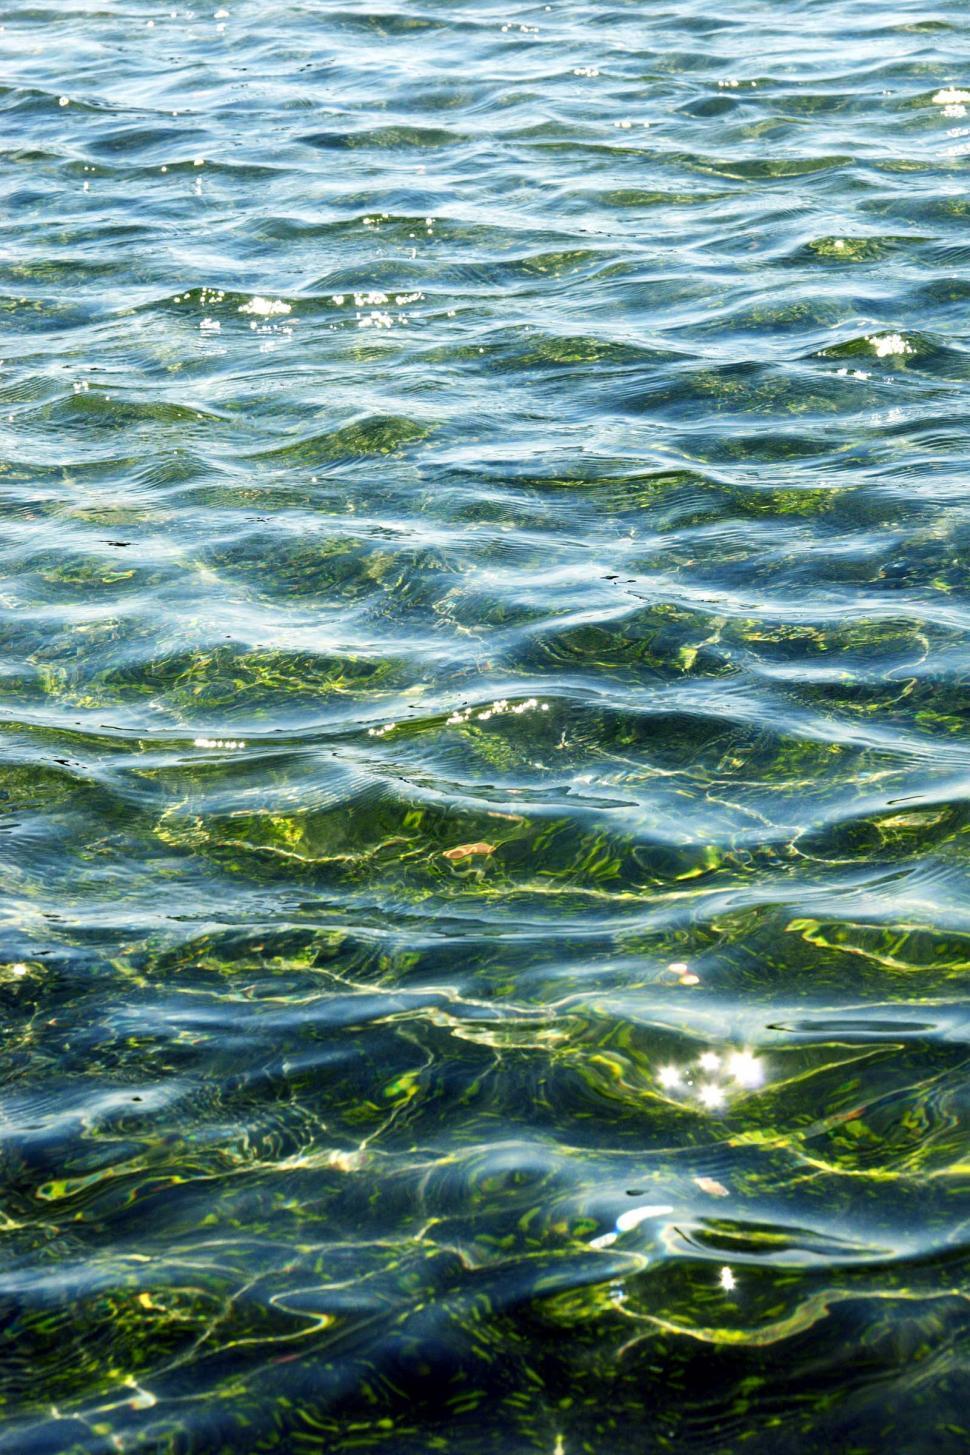 Free Image of Ocean water ripples 